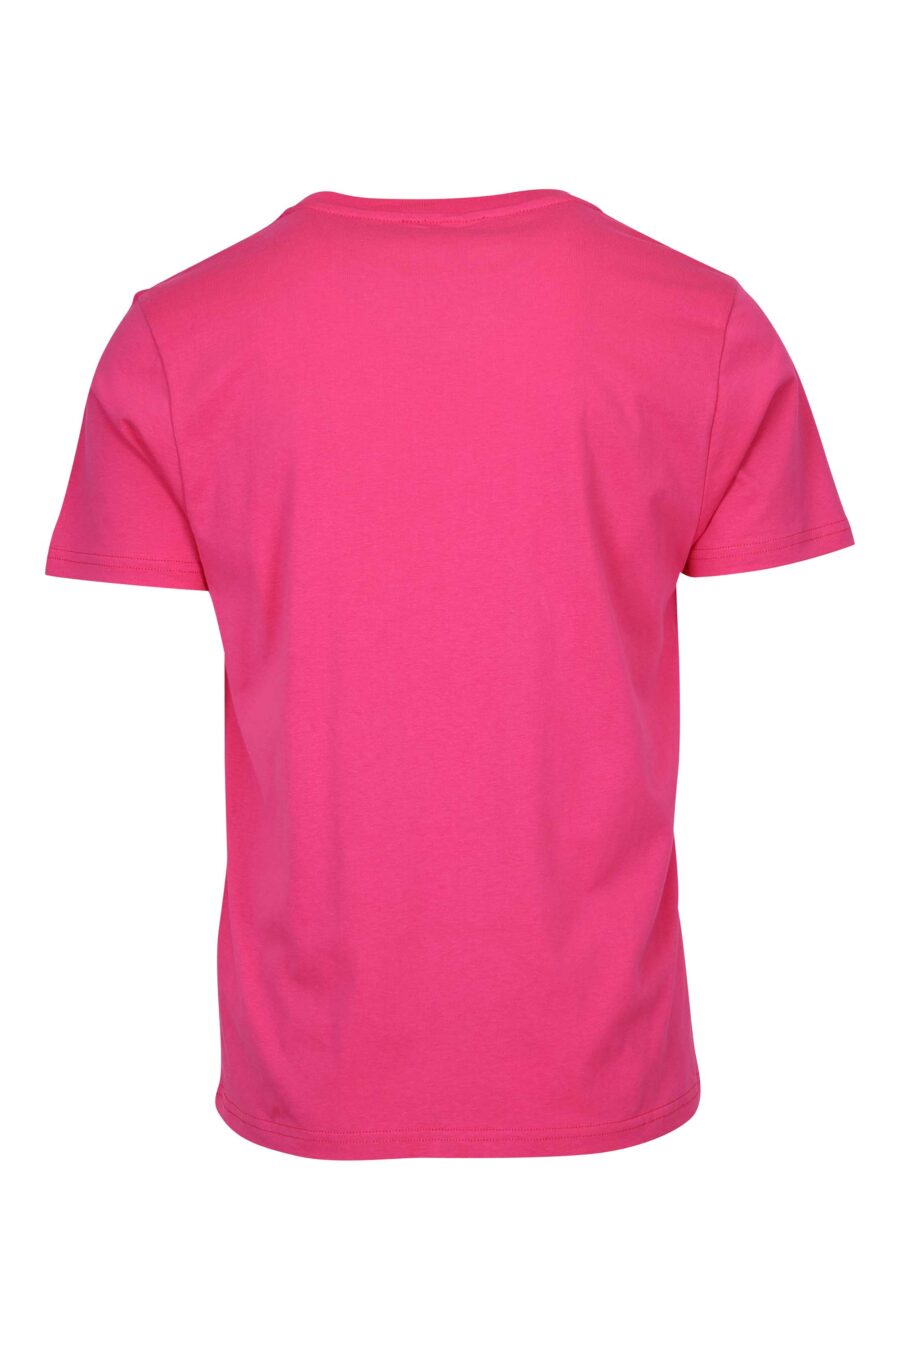 Fuchsiafarbenes T-Shirt mit monochromem Gummilogo auf den Schultern - 667113671888 1